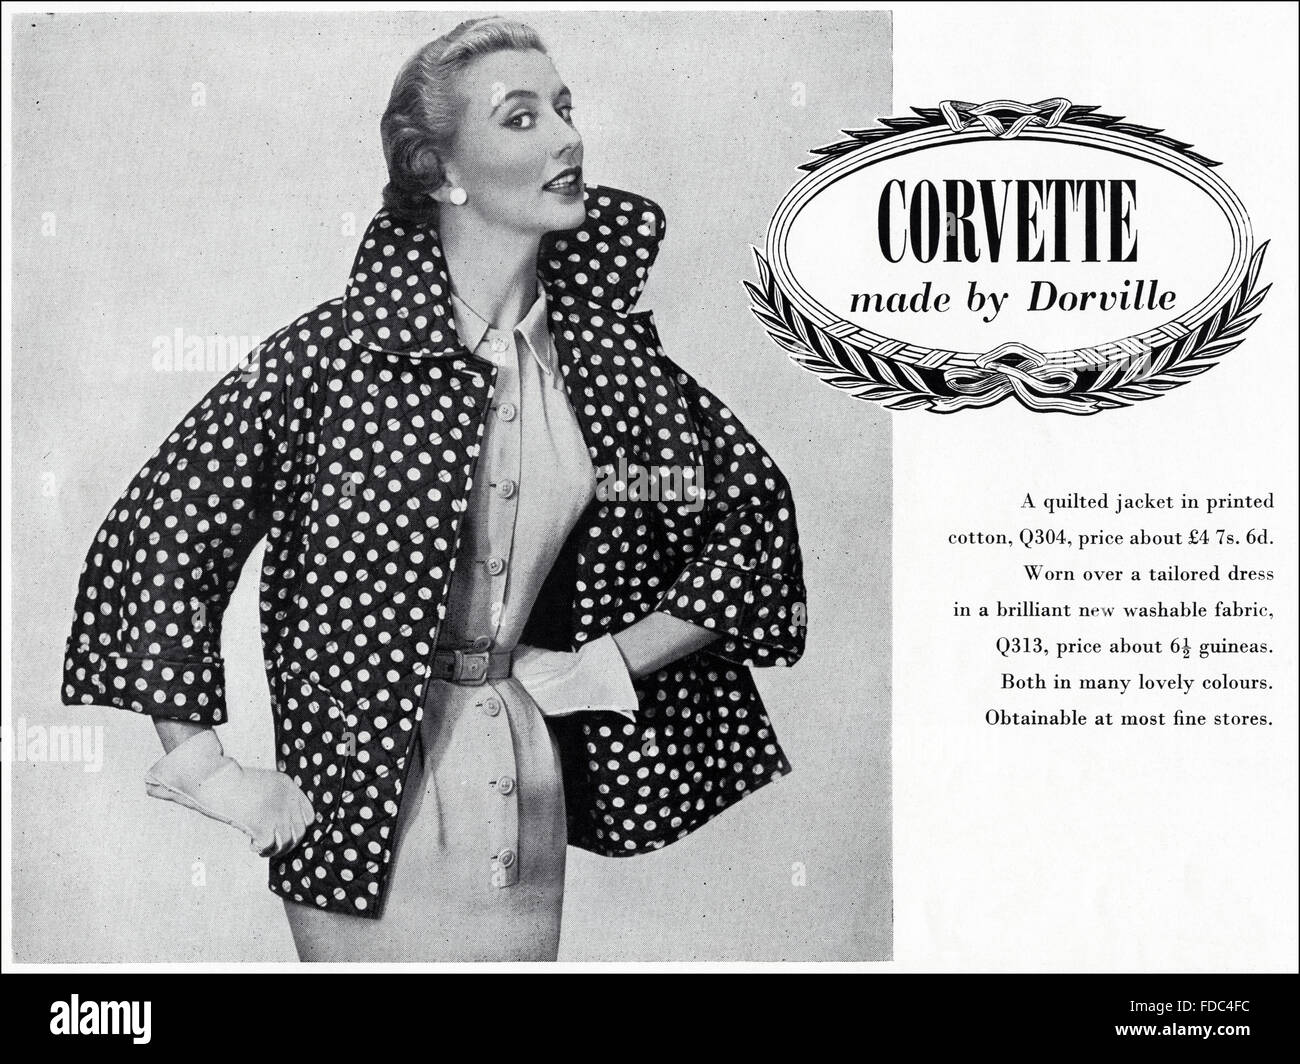 Vintage originale annuncio da anni cinquanta. La pubblicità dal 1954 la pubblicità di moda femminile Corvette fatta da Dorville. Foto Stock